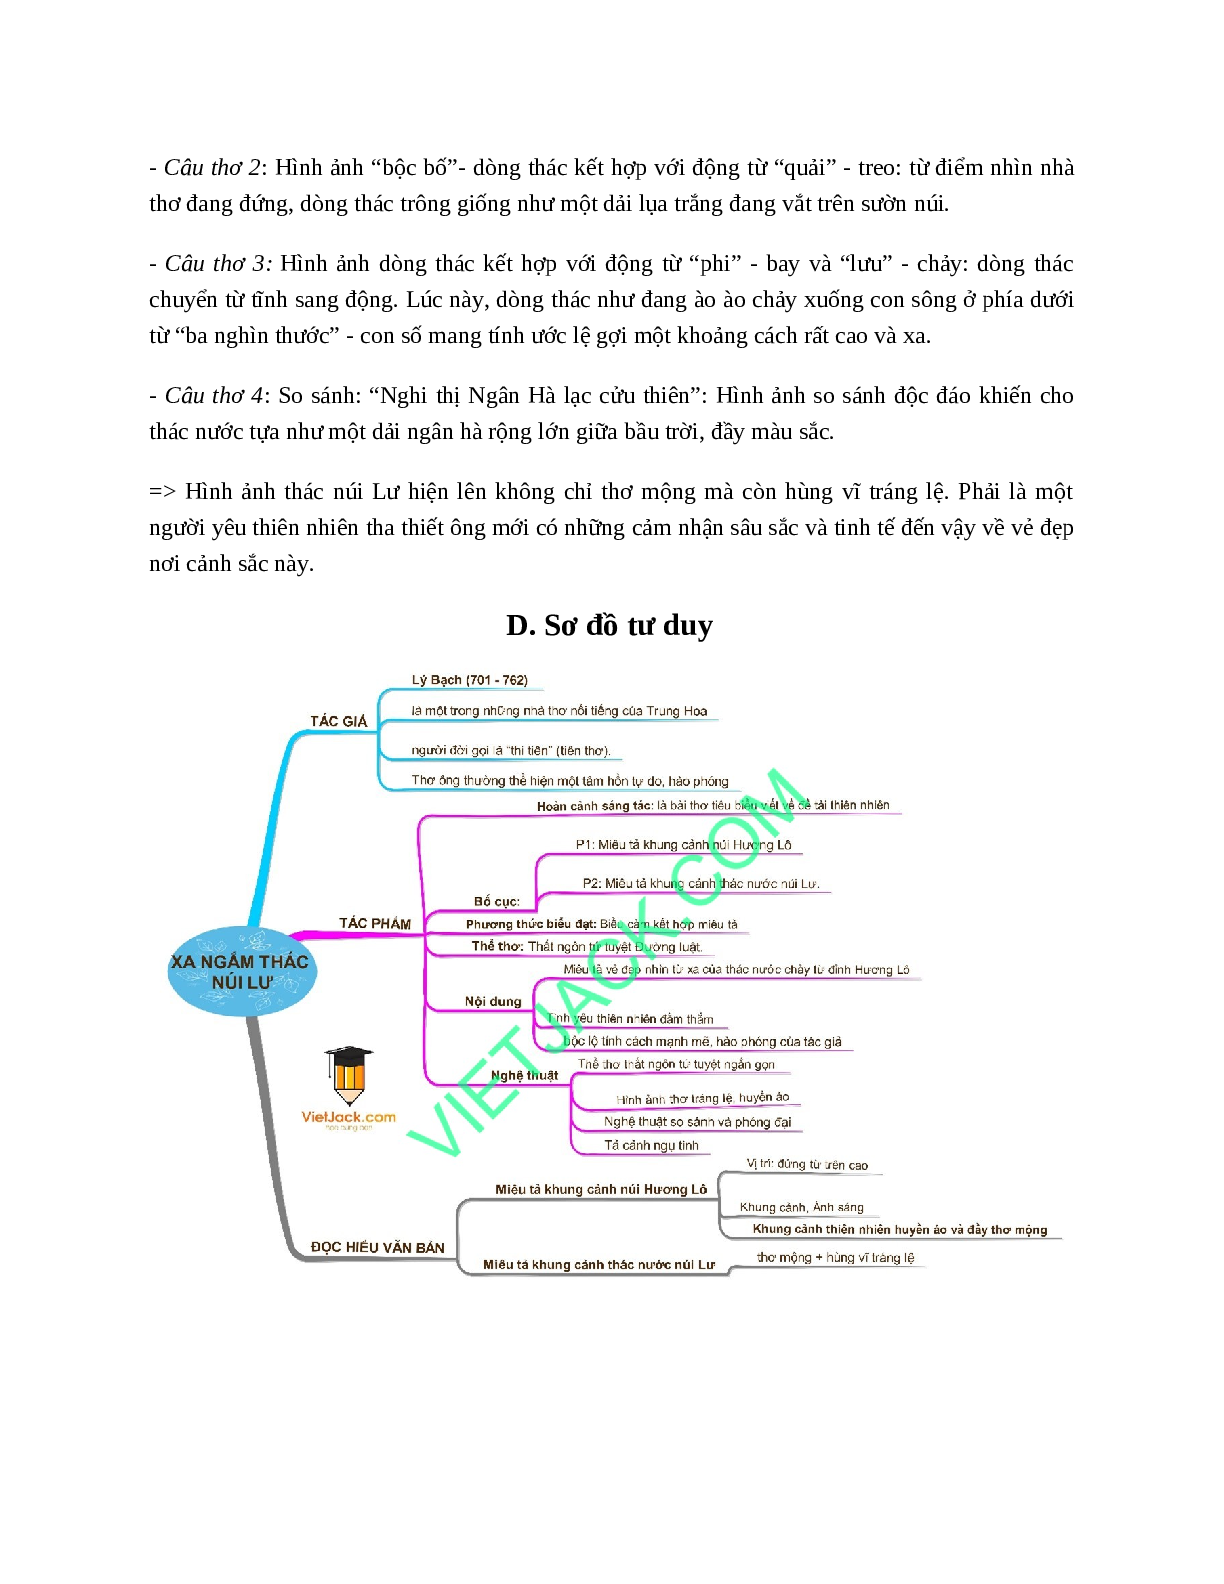 Xa ngắm thác núi Lư - Tác giả tác phẩm - Ngữ văn lớp 7 (trang 3)